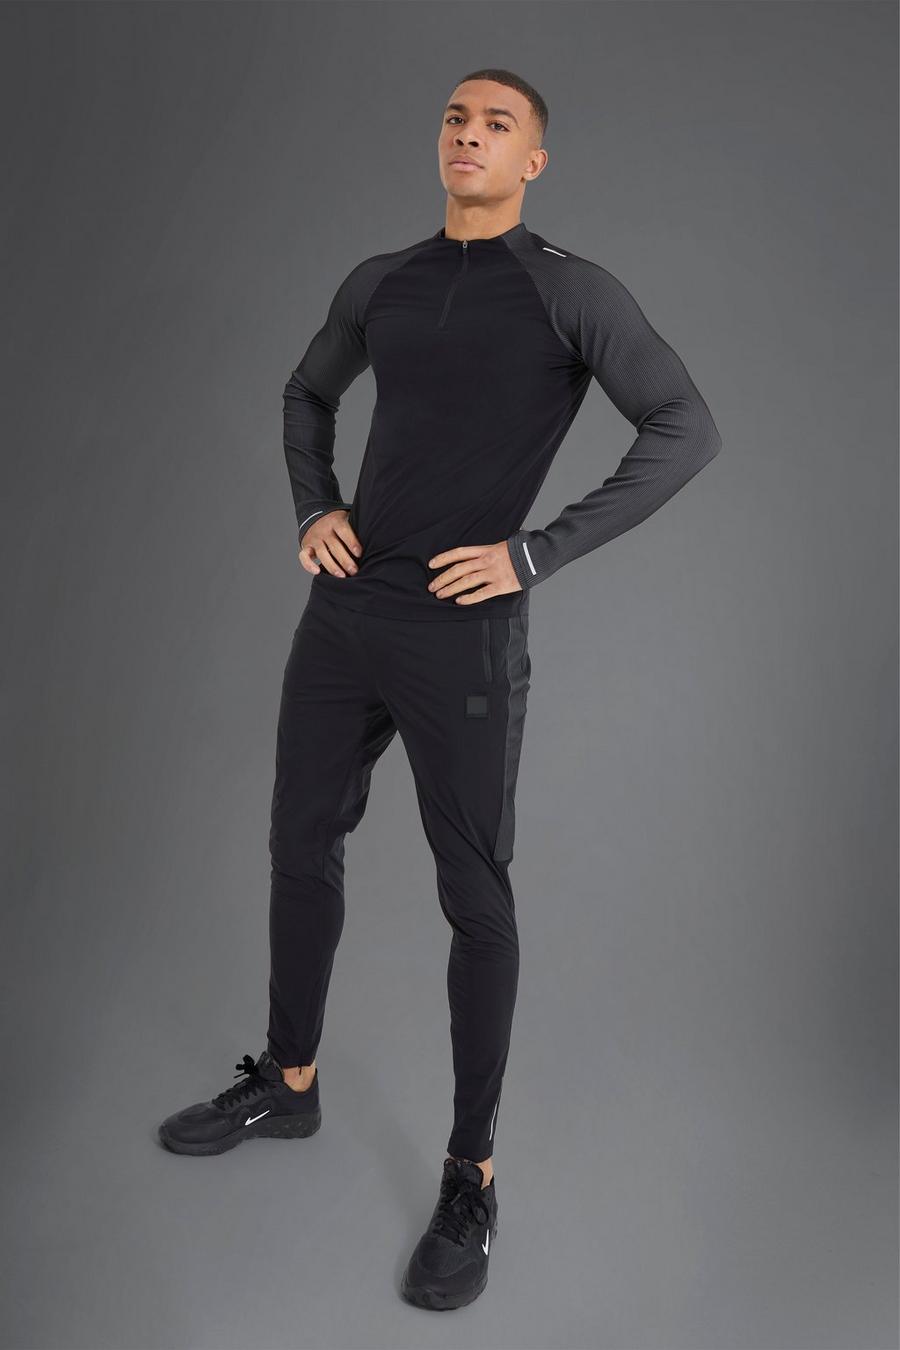 שחור nero חליפת טרנינג ספורטיבית ארוגה לחדר הכושר בגזרה צמודה עם 1/4 רוכסן